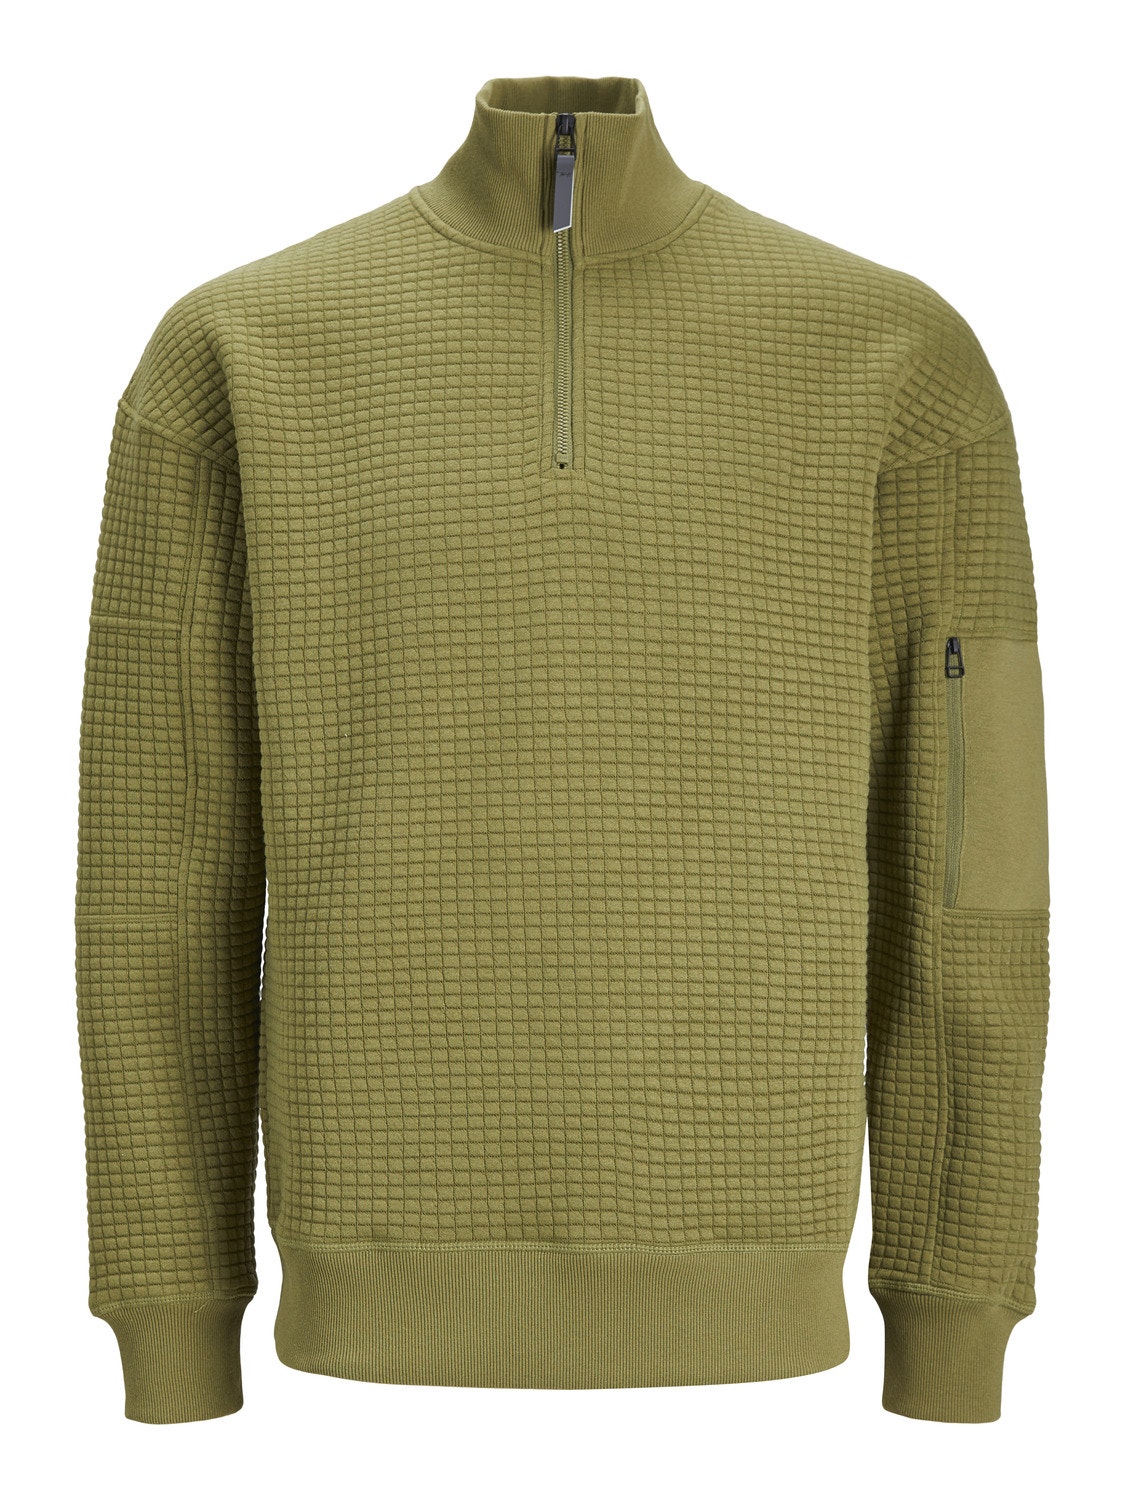 Jack & Jones Plain Half Zip Sweatshirt -Olive Branch - 12245404